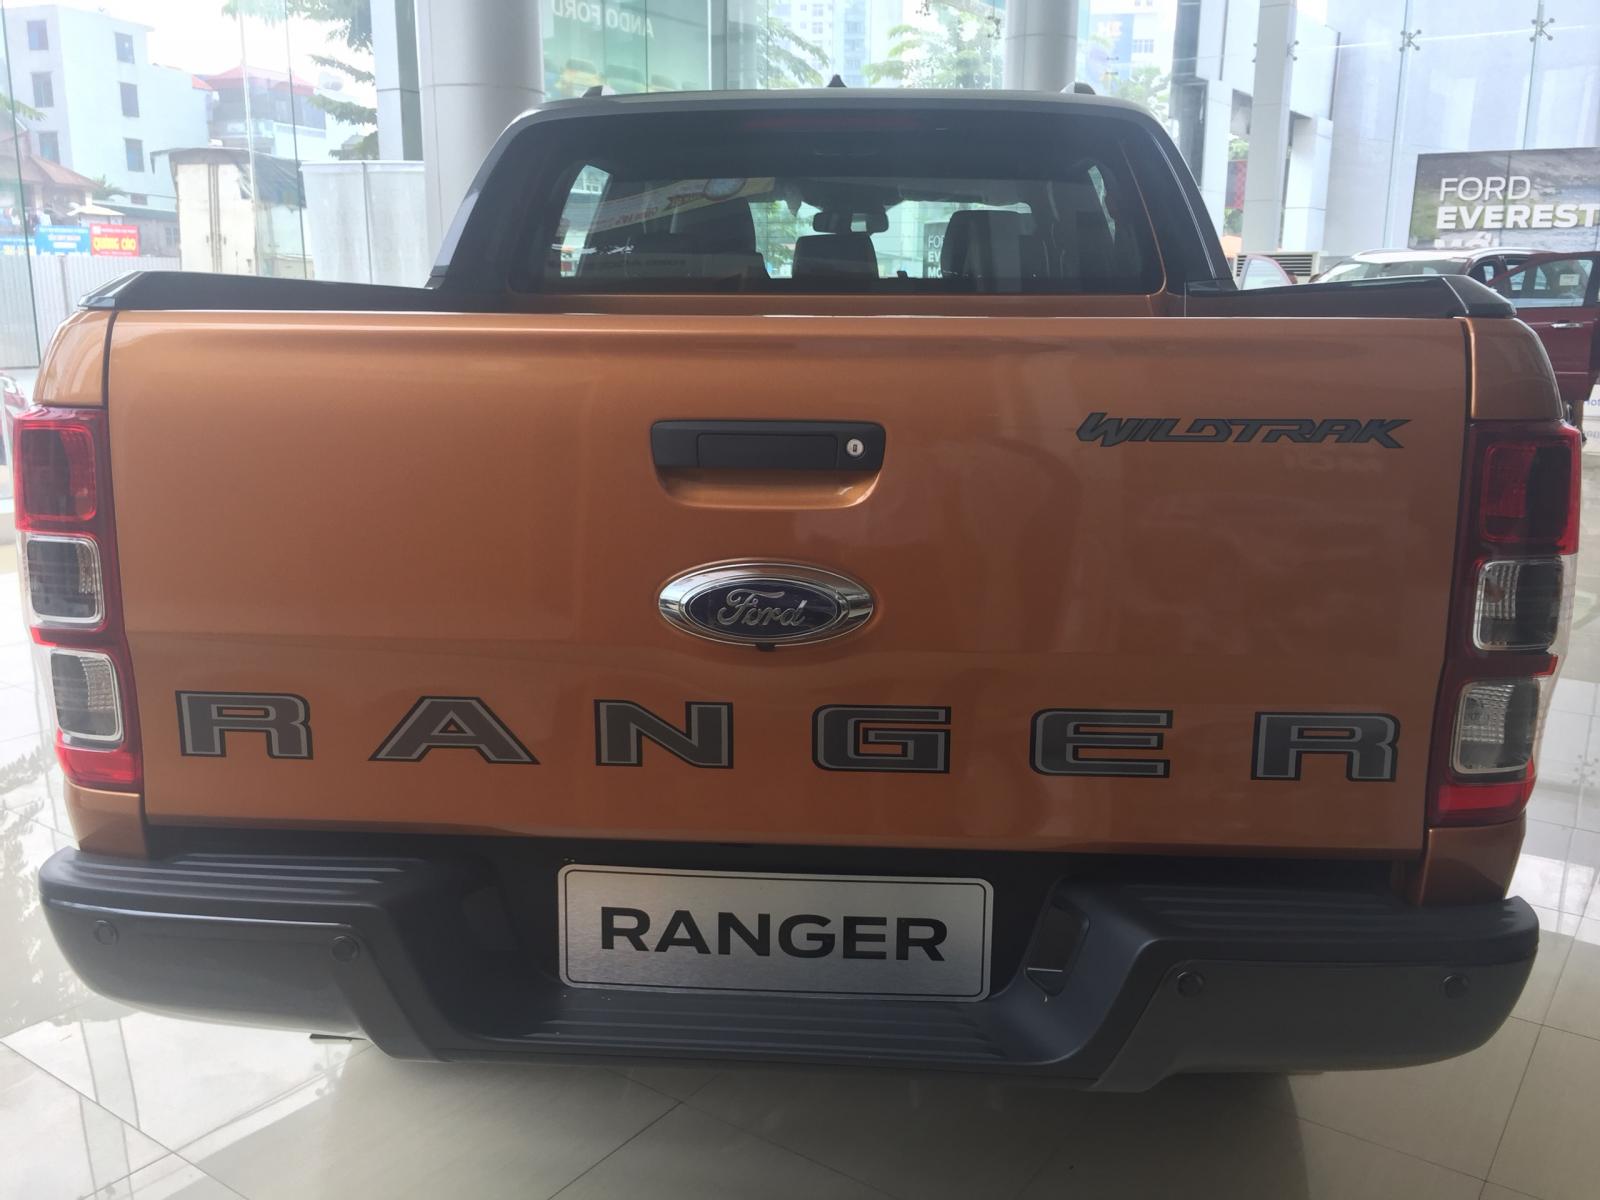 Ranger Wildtrak giảm giá kịch sàn ngay trong tháng ngâu này. Liên hệ 0865660630 để nhận báo giá và ưu đãi-5